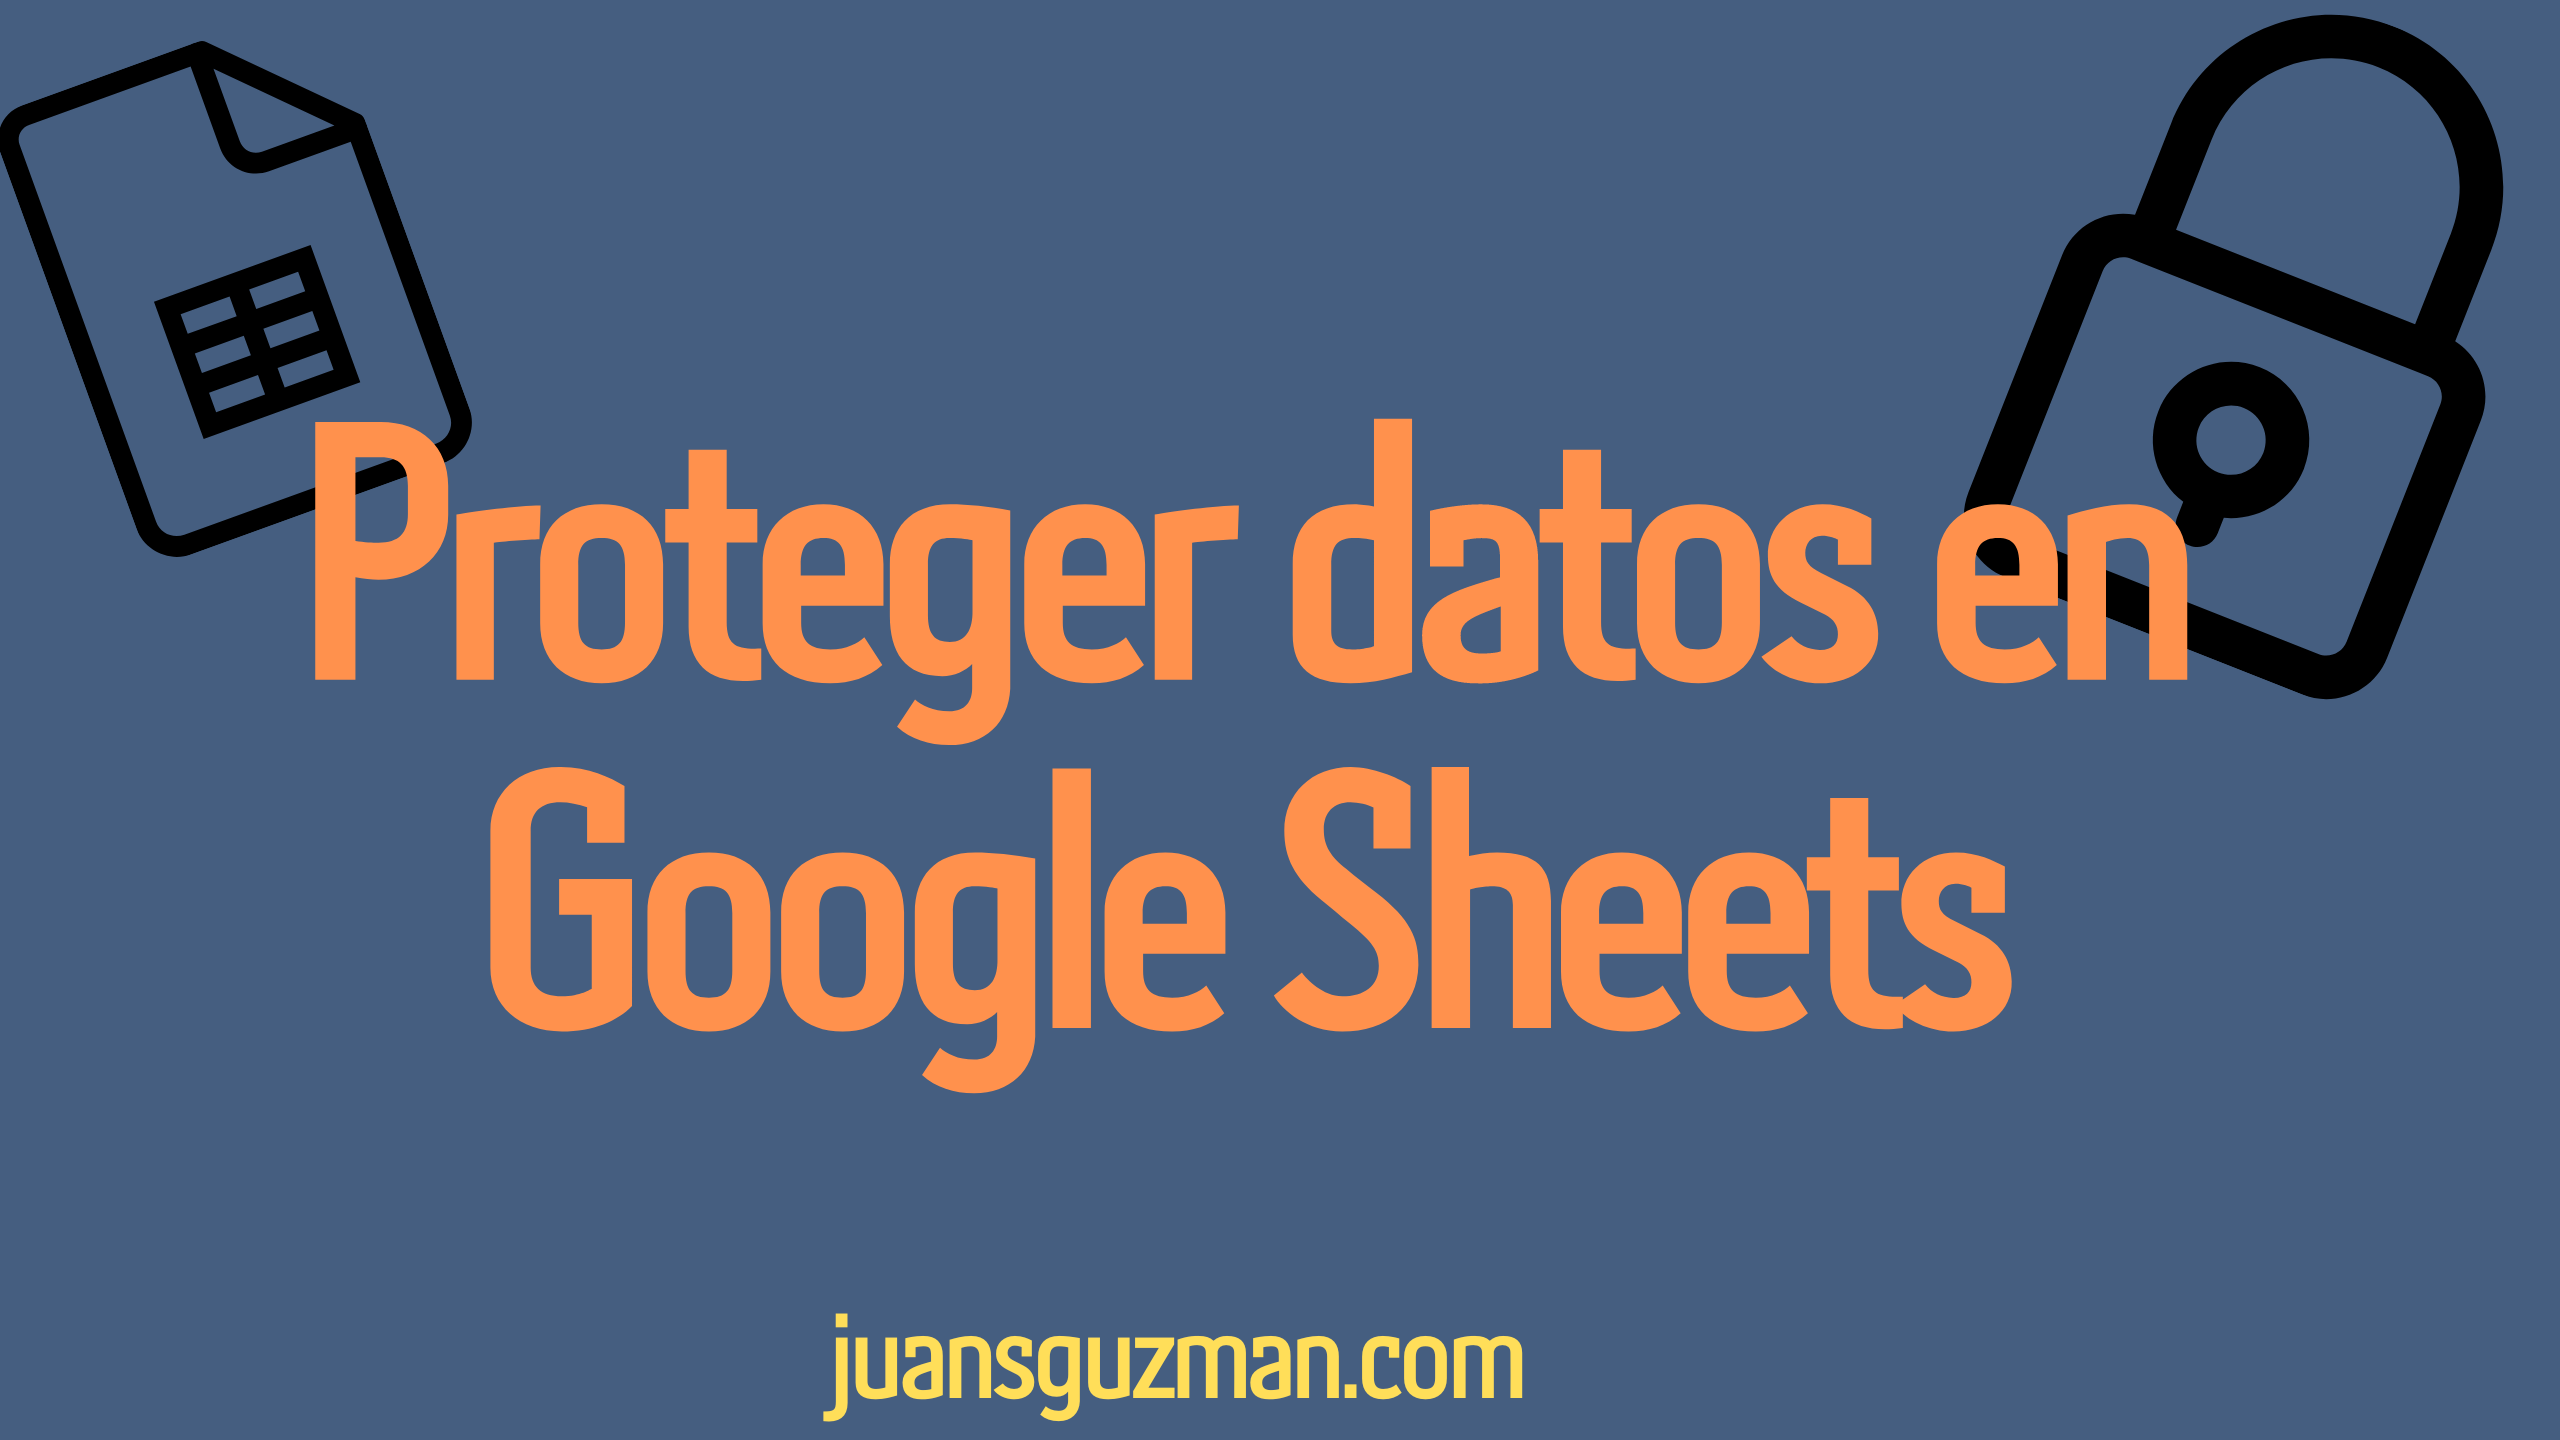 Proteger datos en Google Sheets